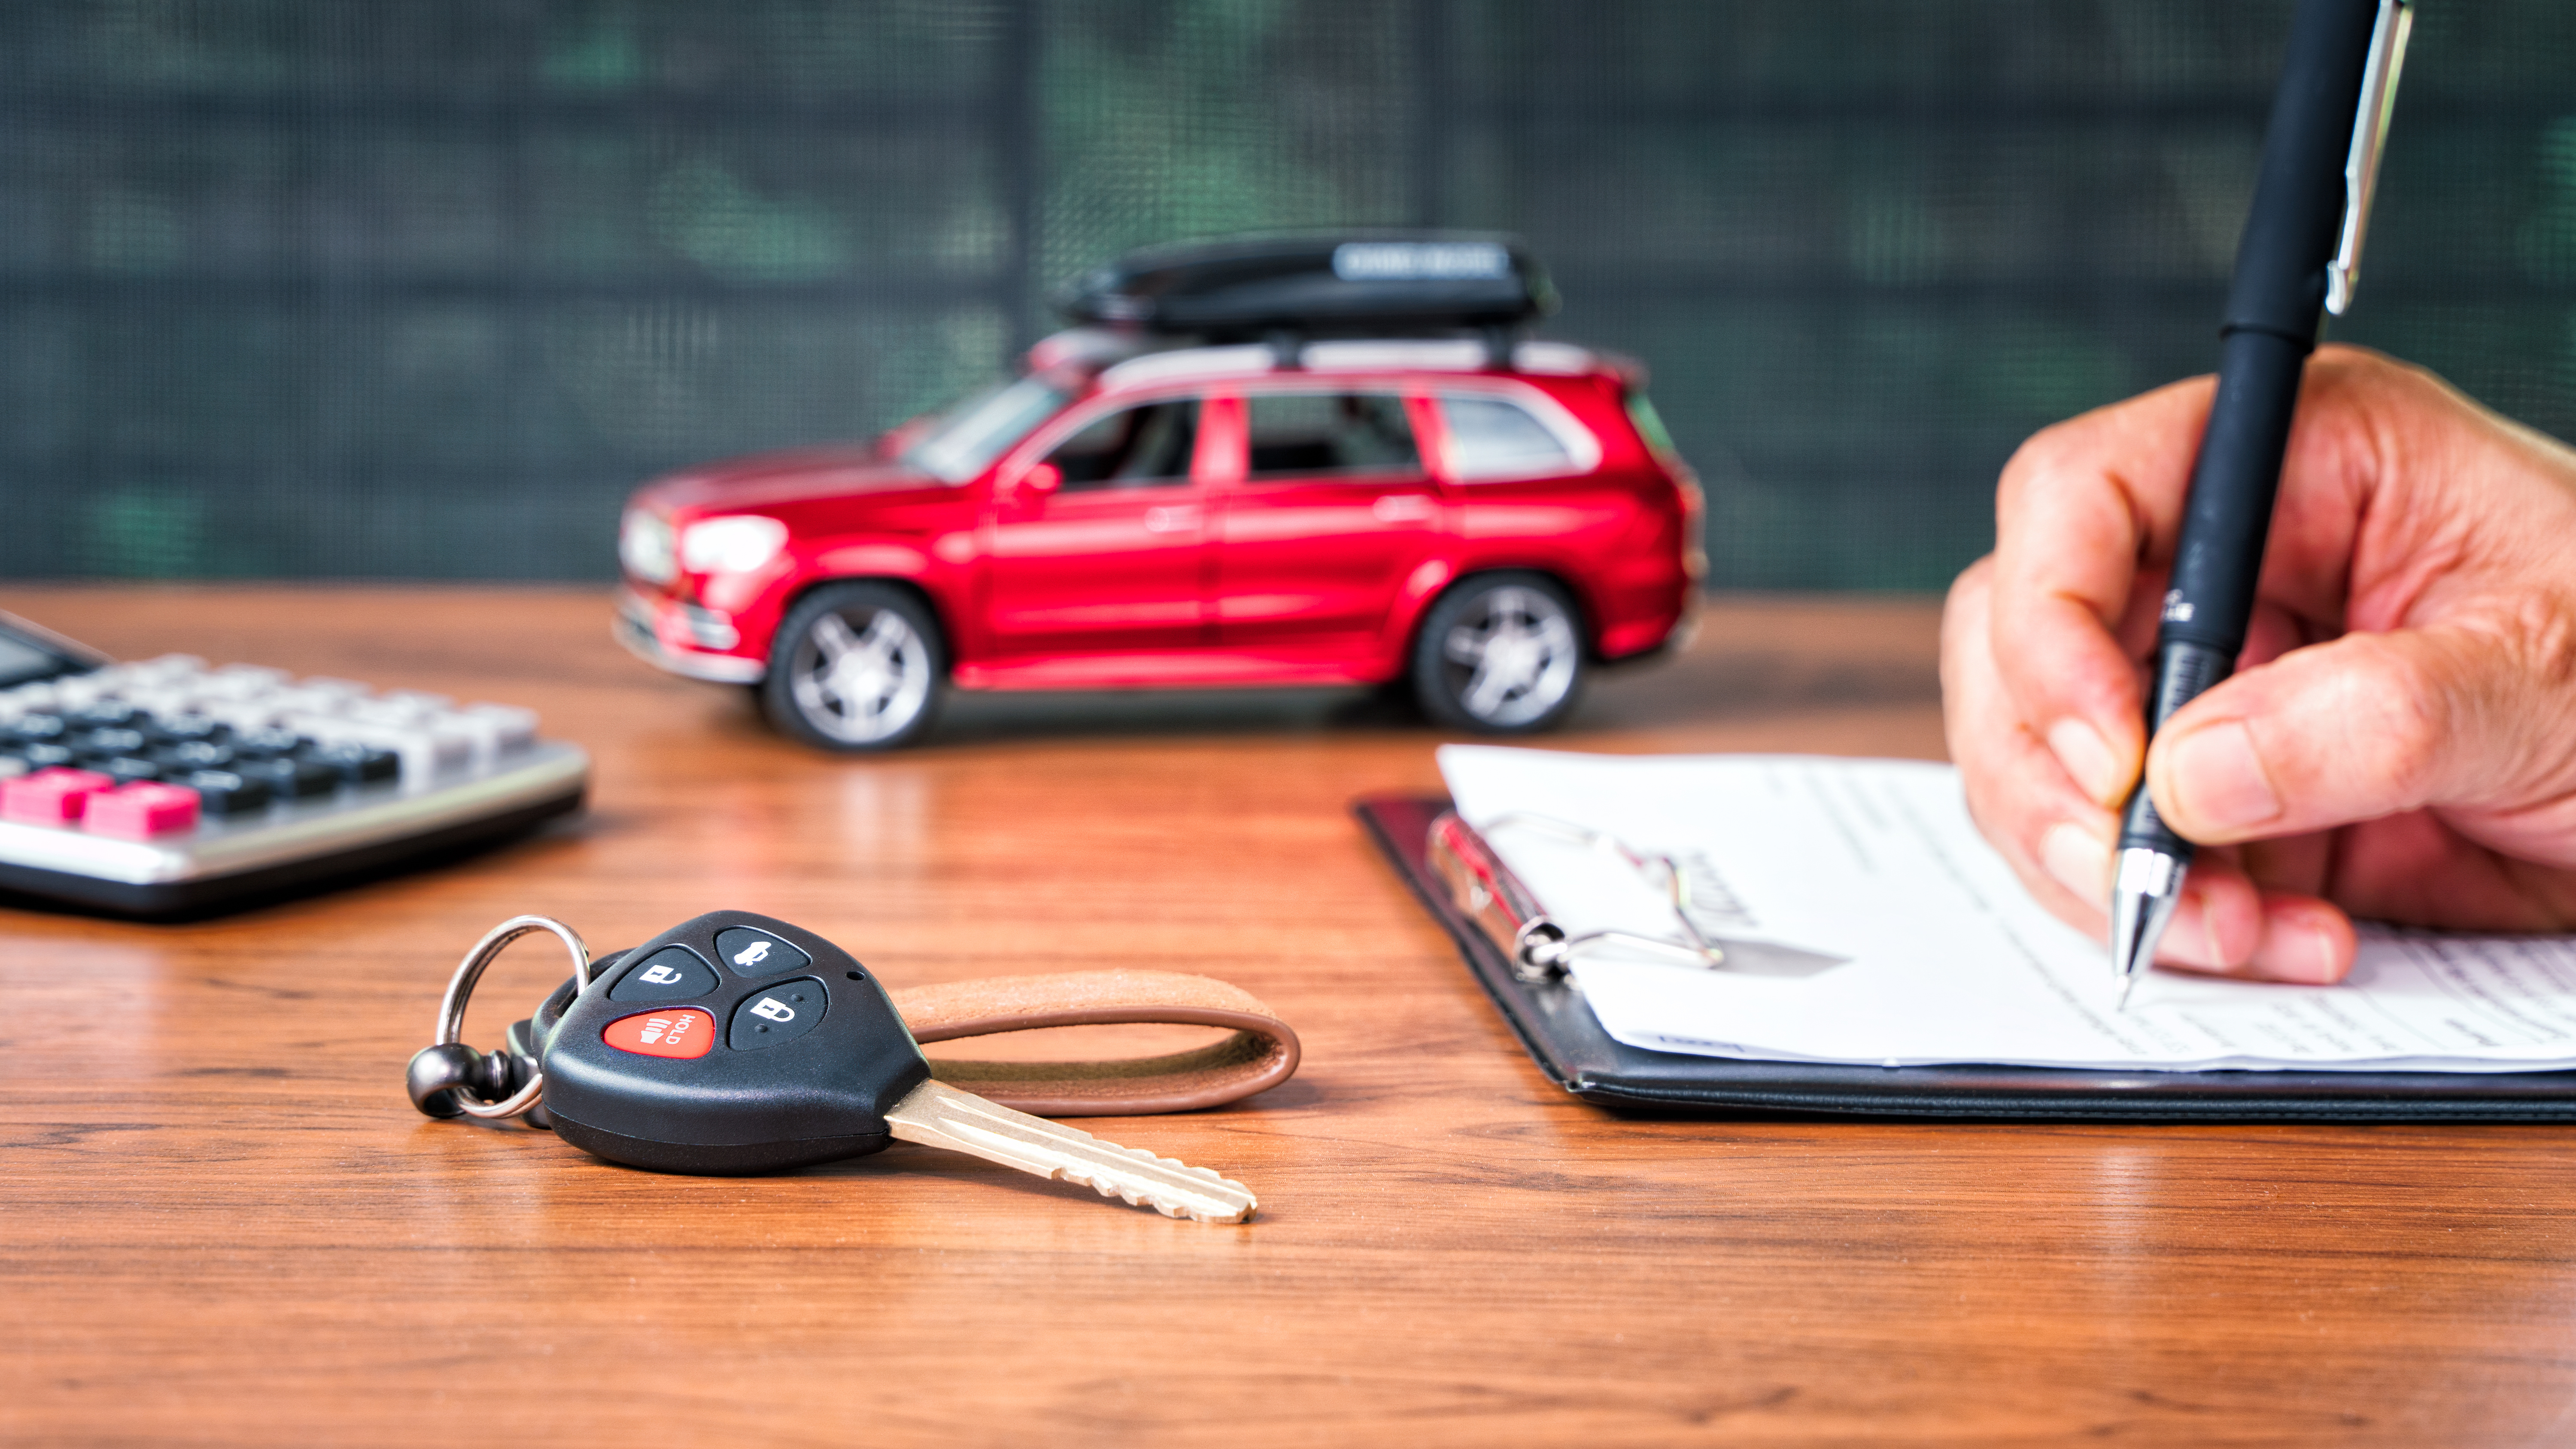 Mão assinando documento sobre mesa com chave de carro, calculadora e carro miniatura ao lado